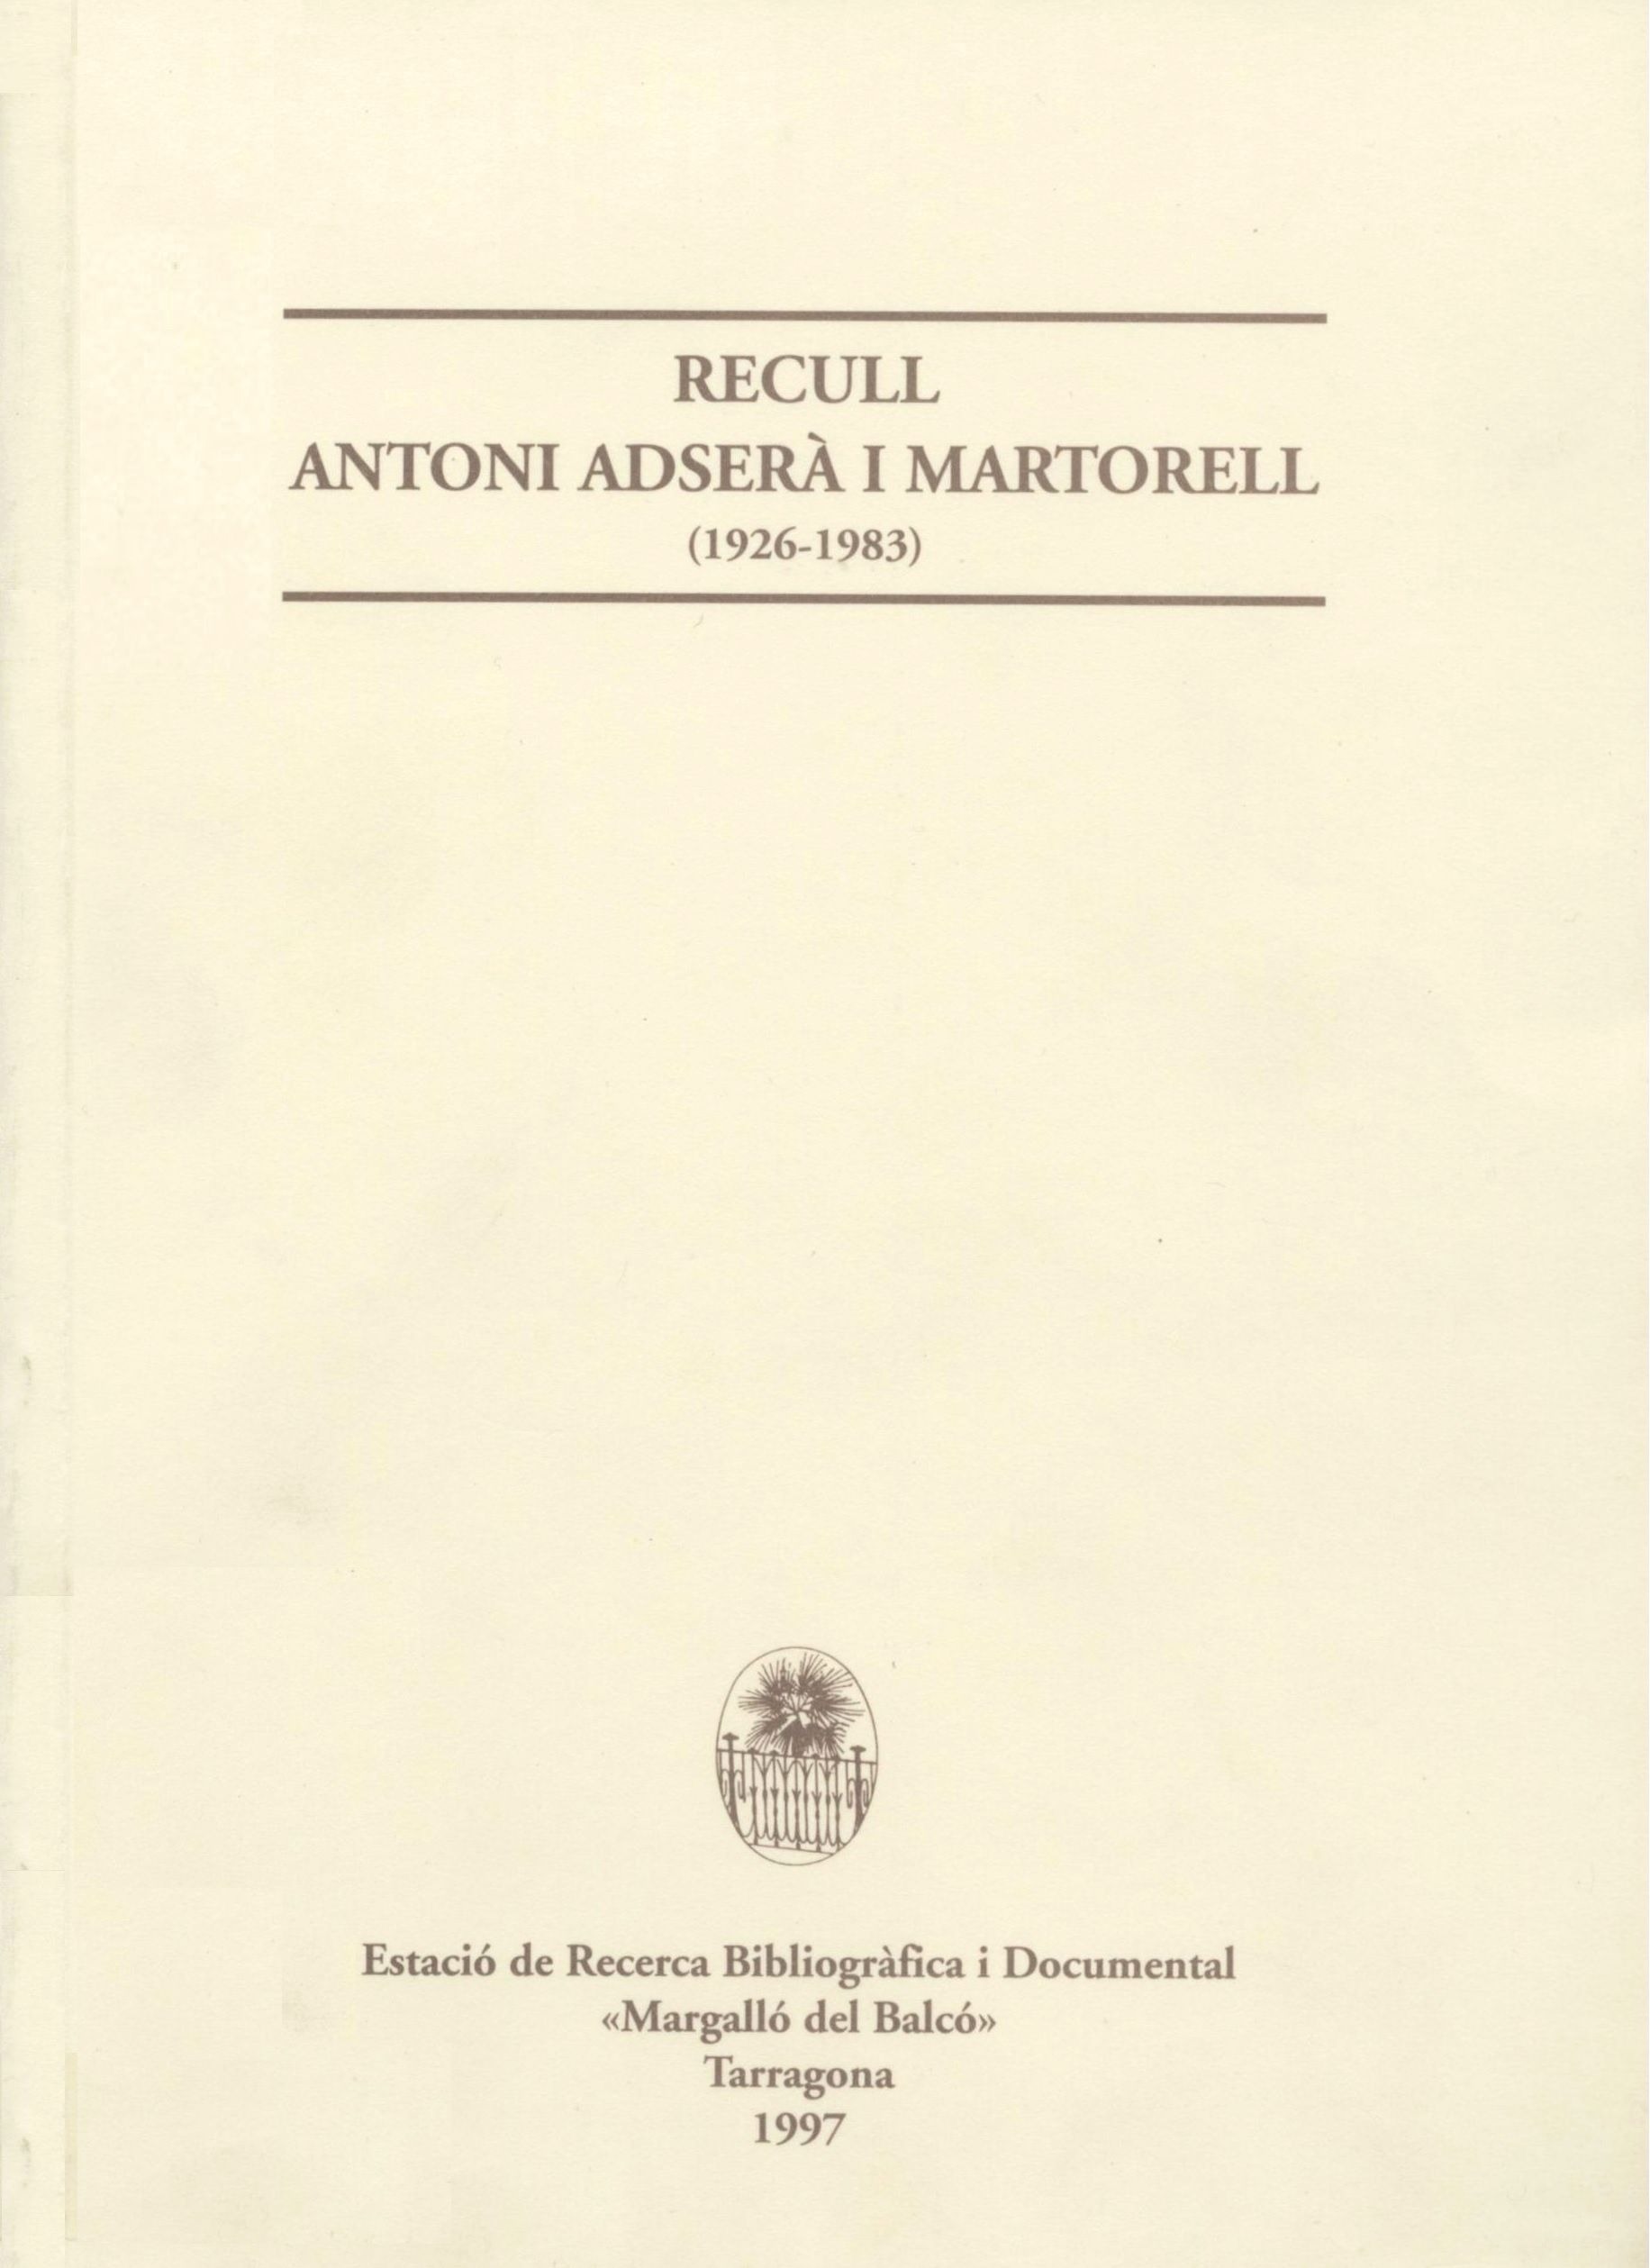 Imagen de portada del libro Recull Antoni Adserà i Martorell (1926-1983)